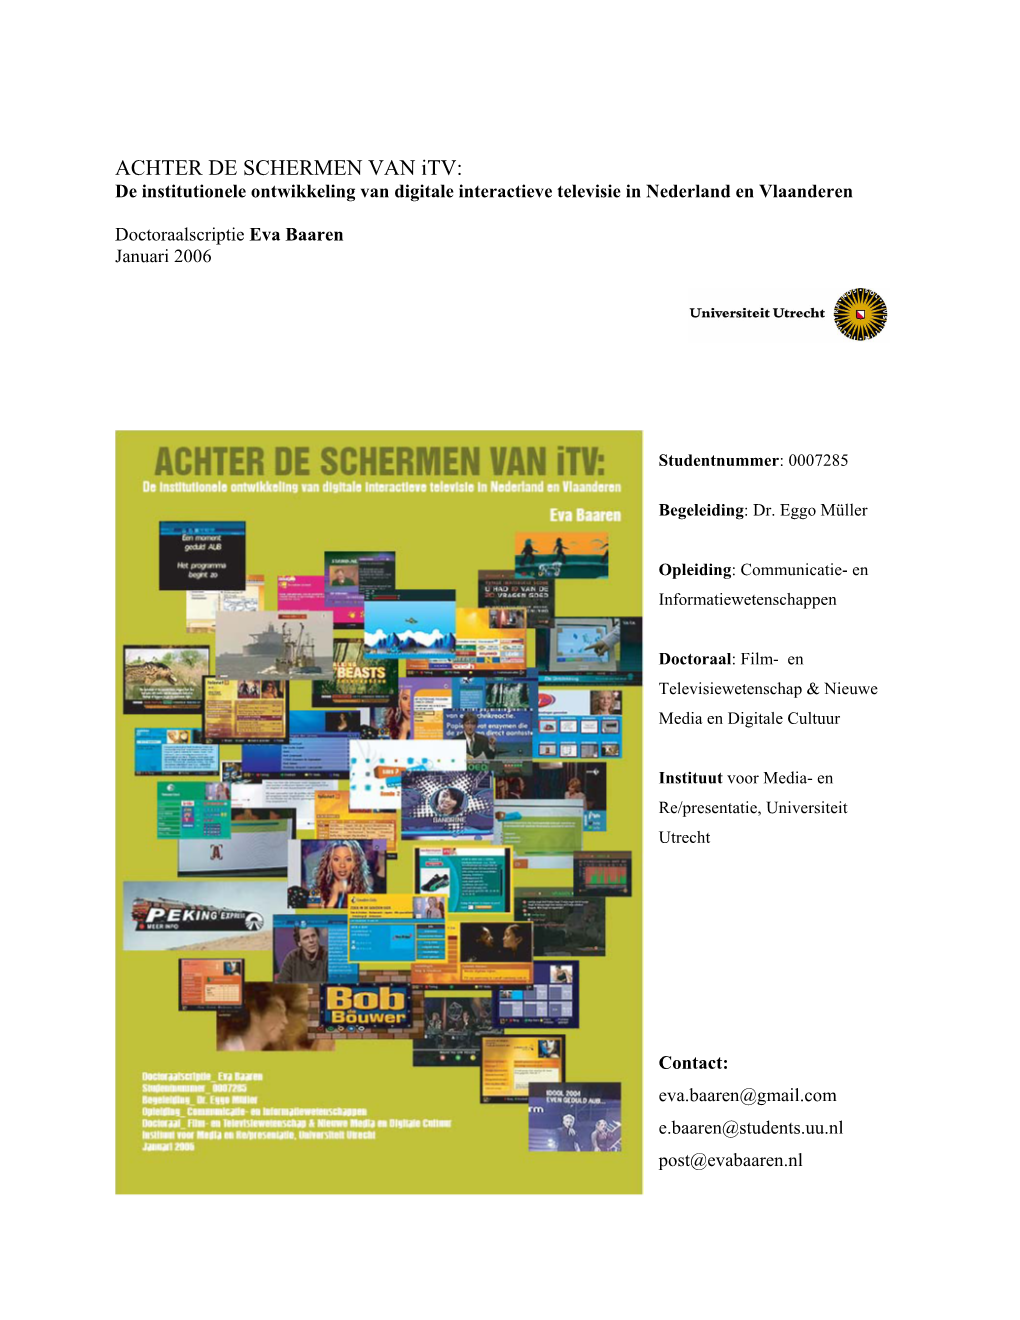 ACHTER DE SCHERMEN VAN Itv: De Institutionele Ontwikkeling Van Digitale Interactieve Televisie in Nederland En Vlaanderen